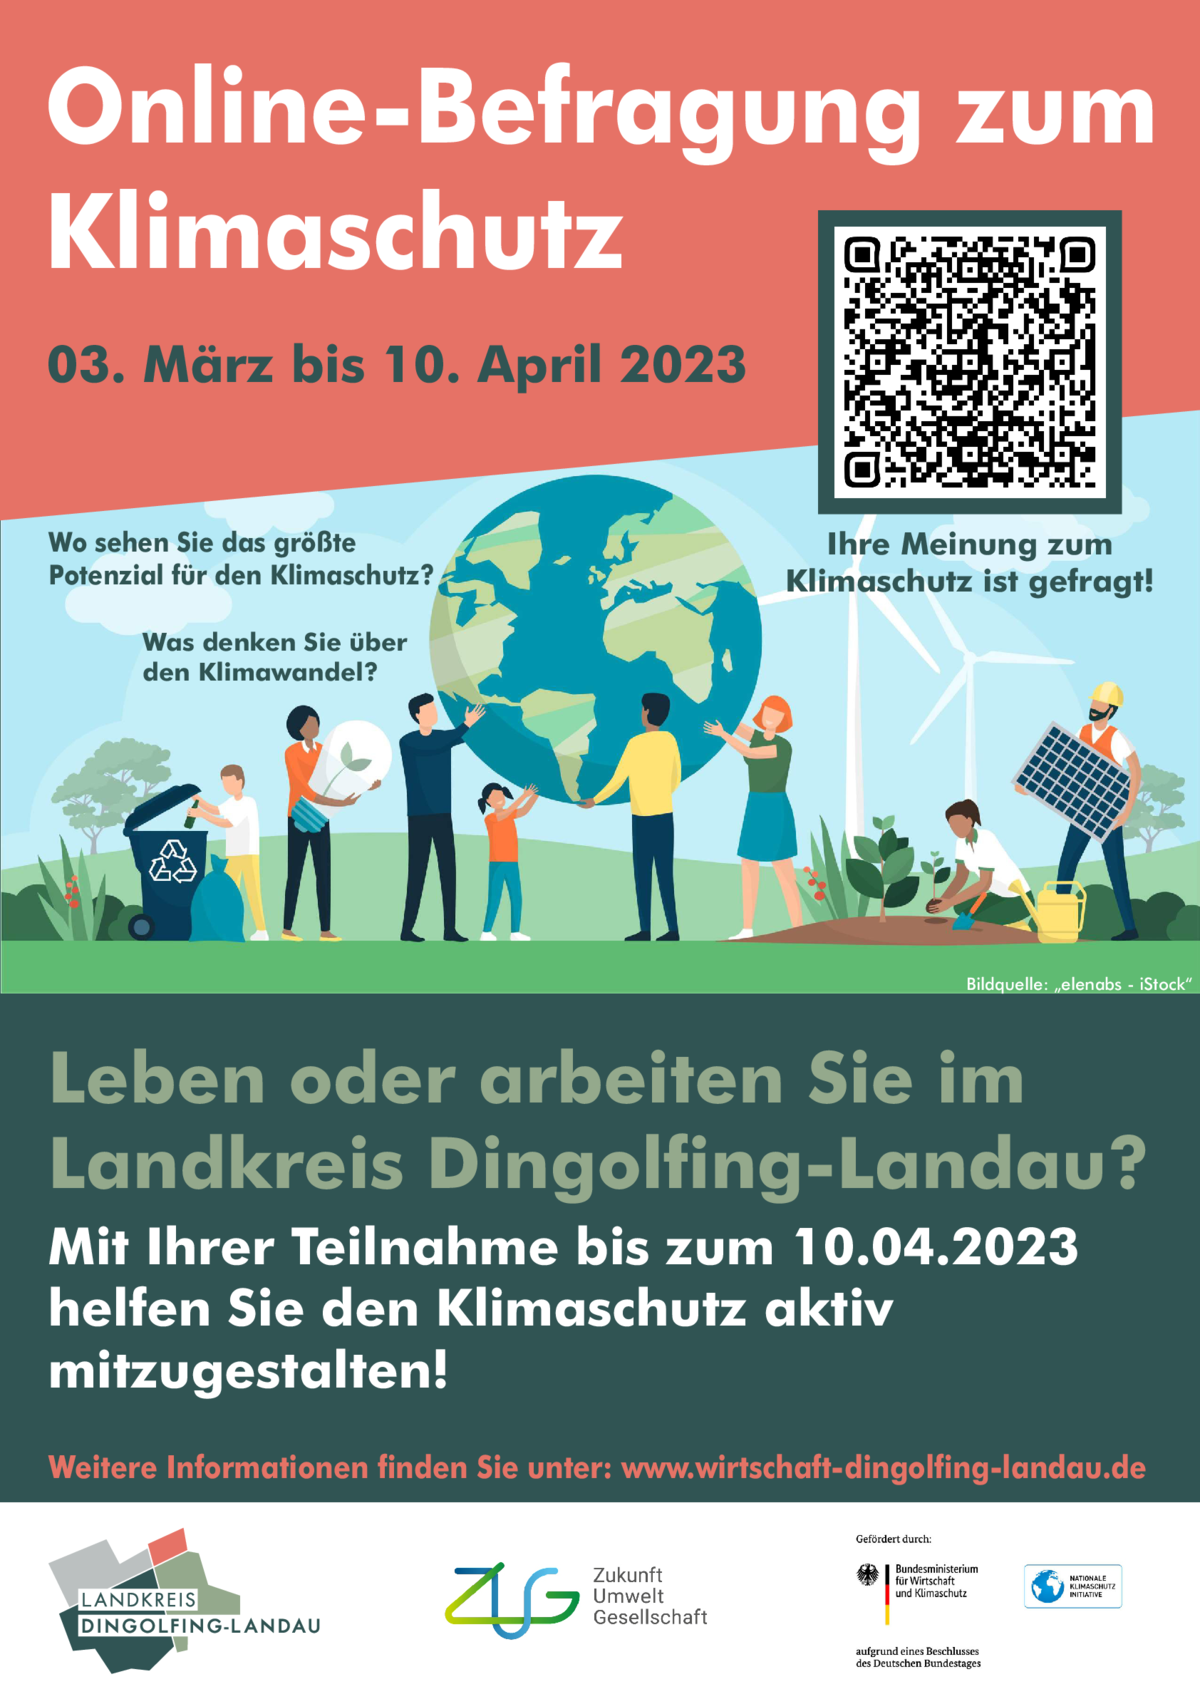 Plakat "Online-Befragung zum Klimaschutz"